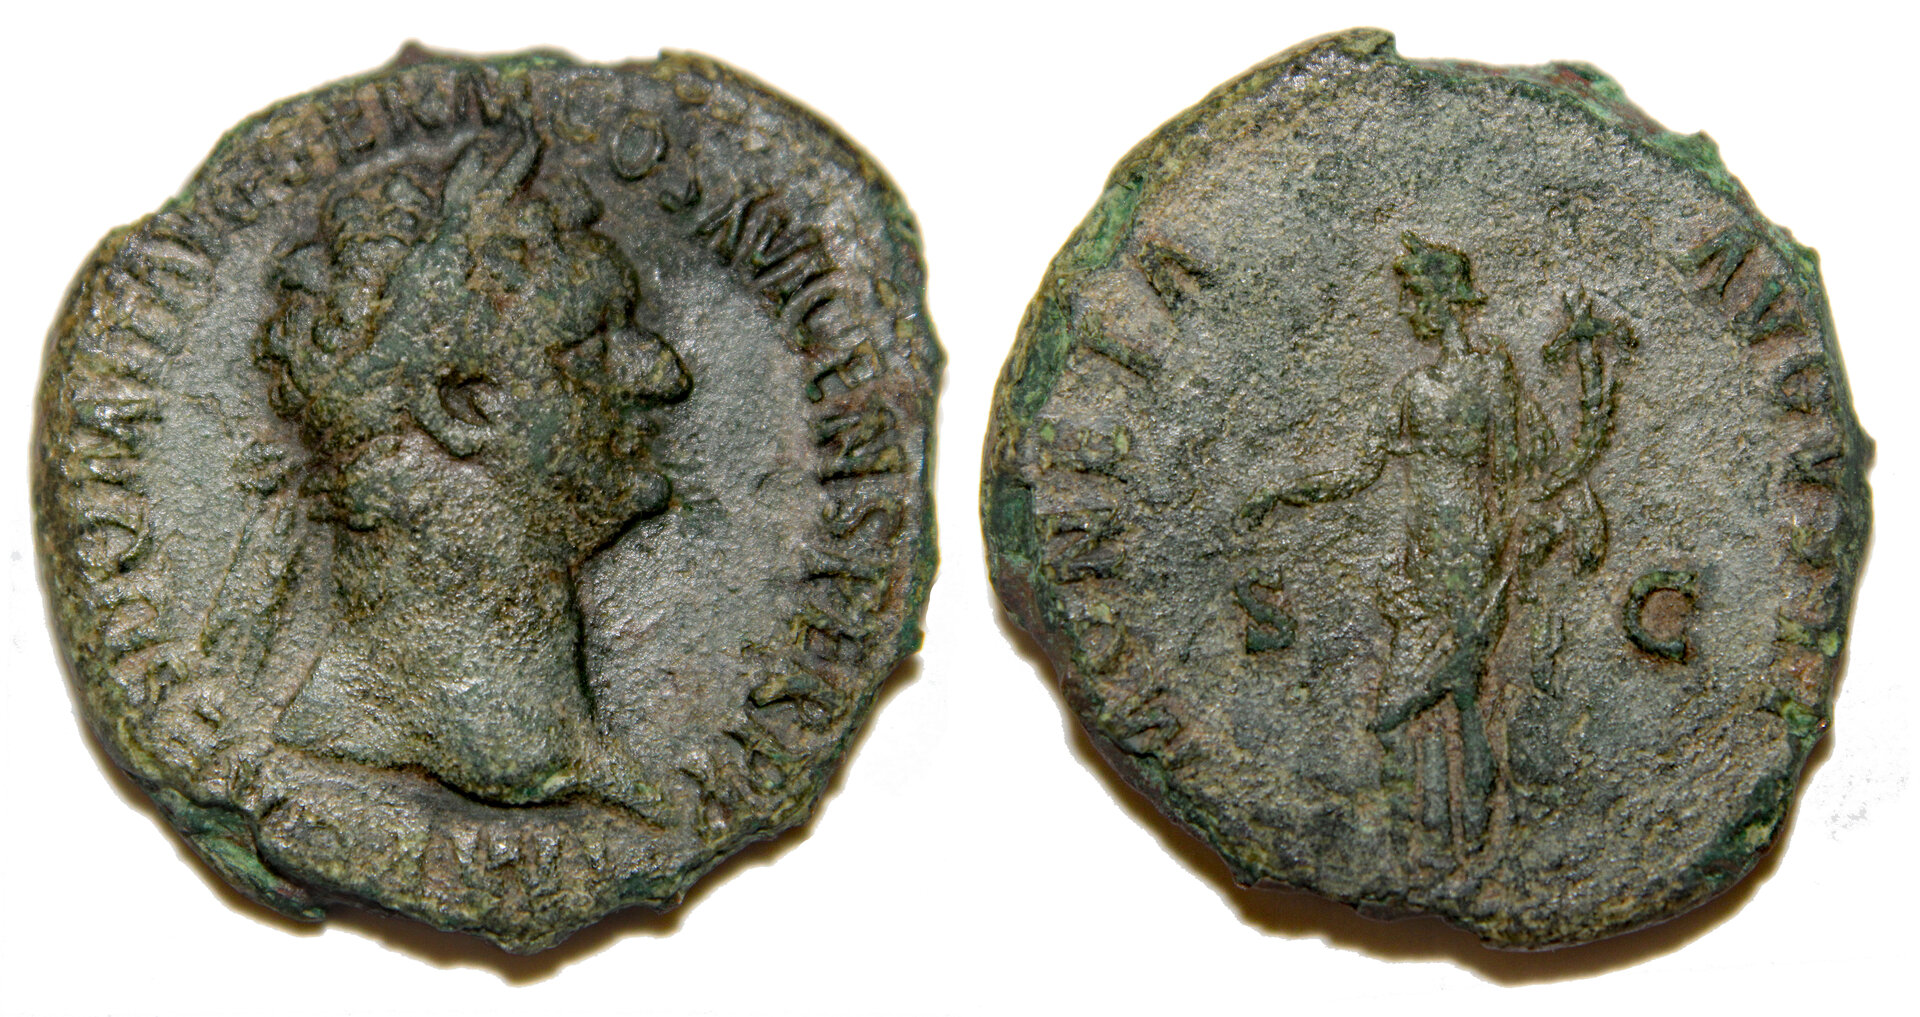 D-Camera Domitian AE As Rome 92-94 AD Moneta cor edge 10.15g RIC II, 408  eBay 1-26-22.jpg